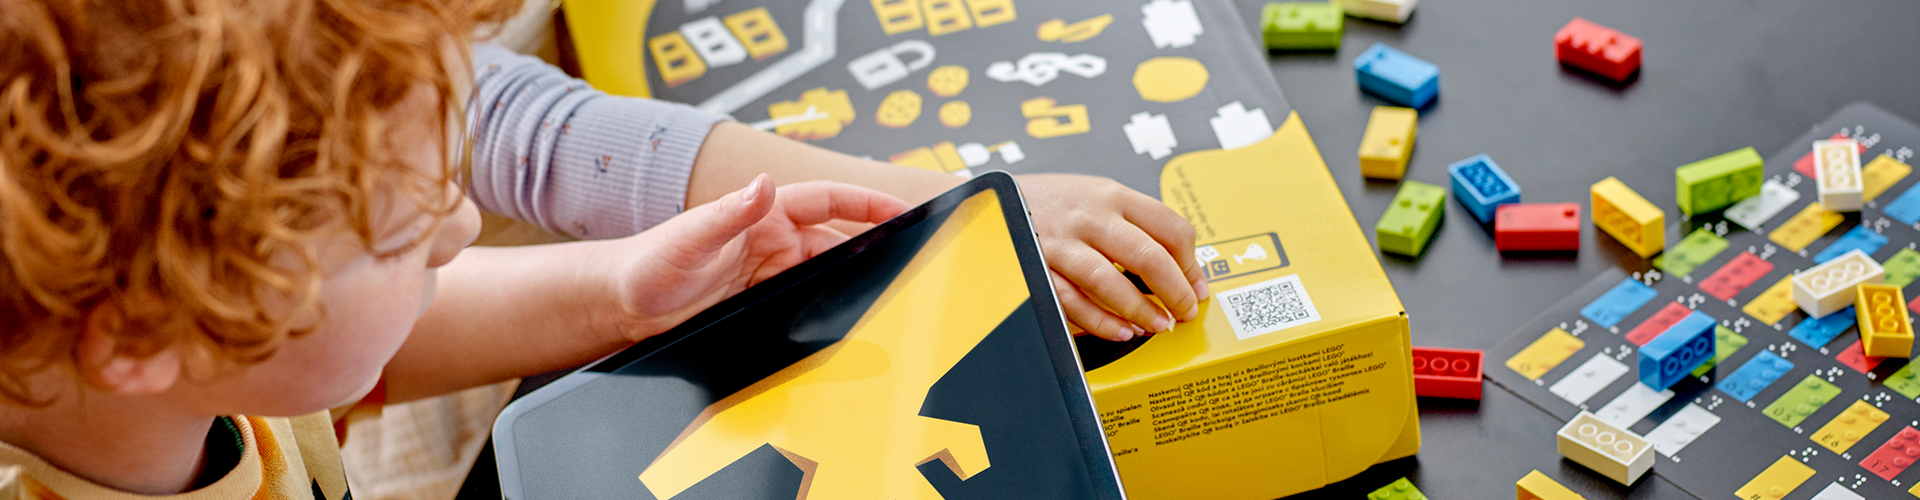 Ein Kind hält einen schwarz-gelben Karton in der Hand, um es herum sind bunte LEGO Steine, die mit Braille Schrift bedruckt sind.